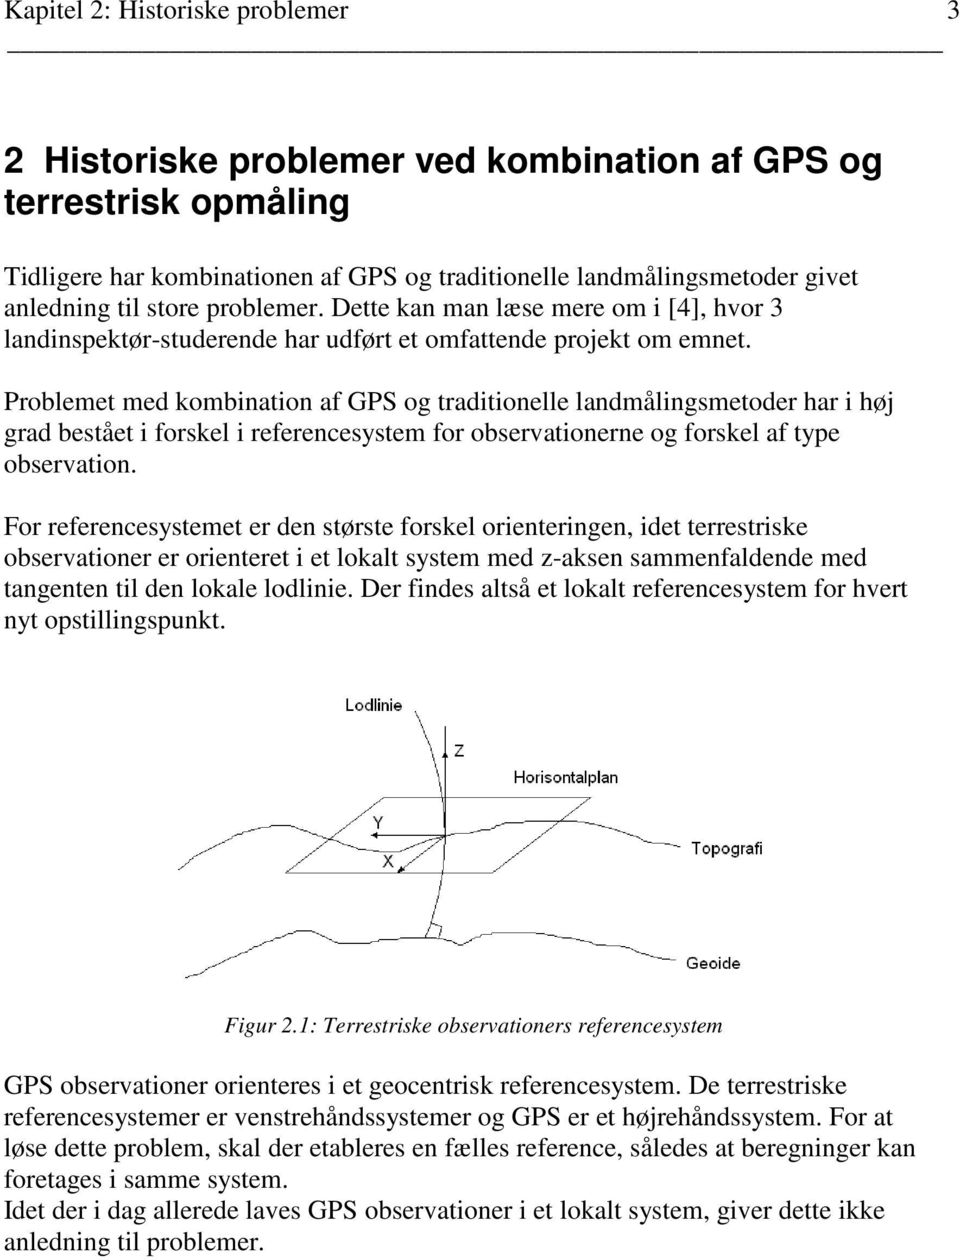 Problemet med kombination af GPS og traditionelle landmålingsmetoder har i høj grad bestået i forskel i referencesystem for observationerne og forskel af type observation.